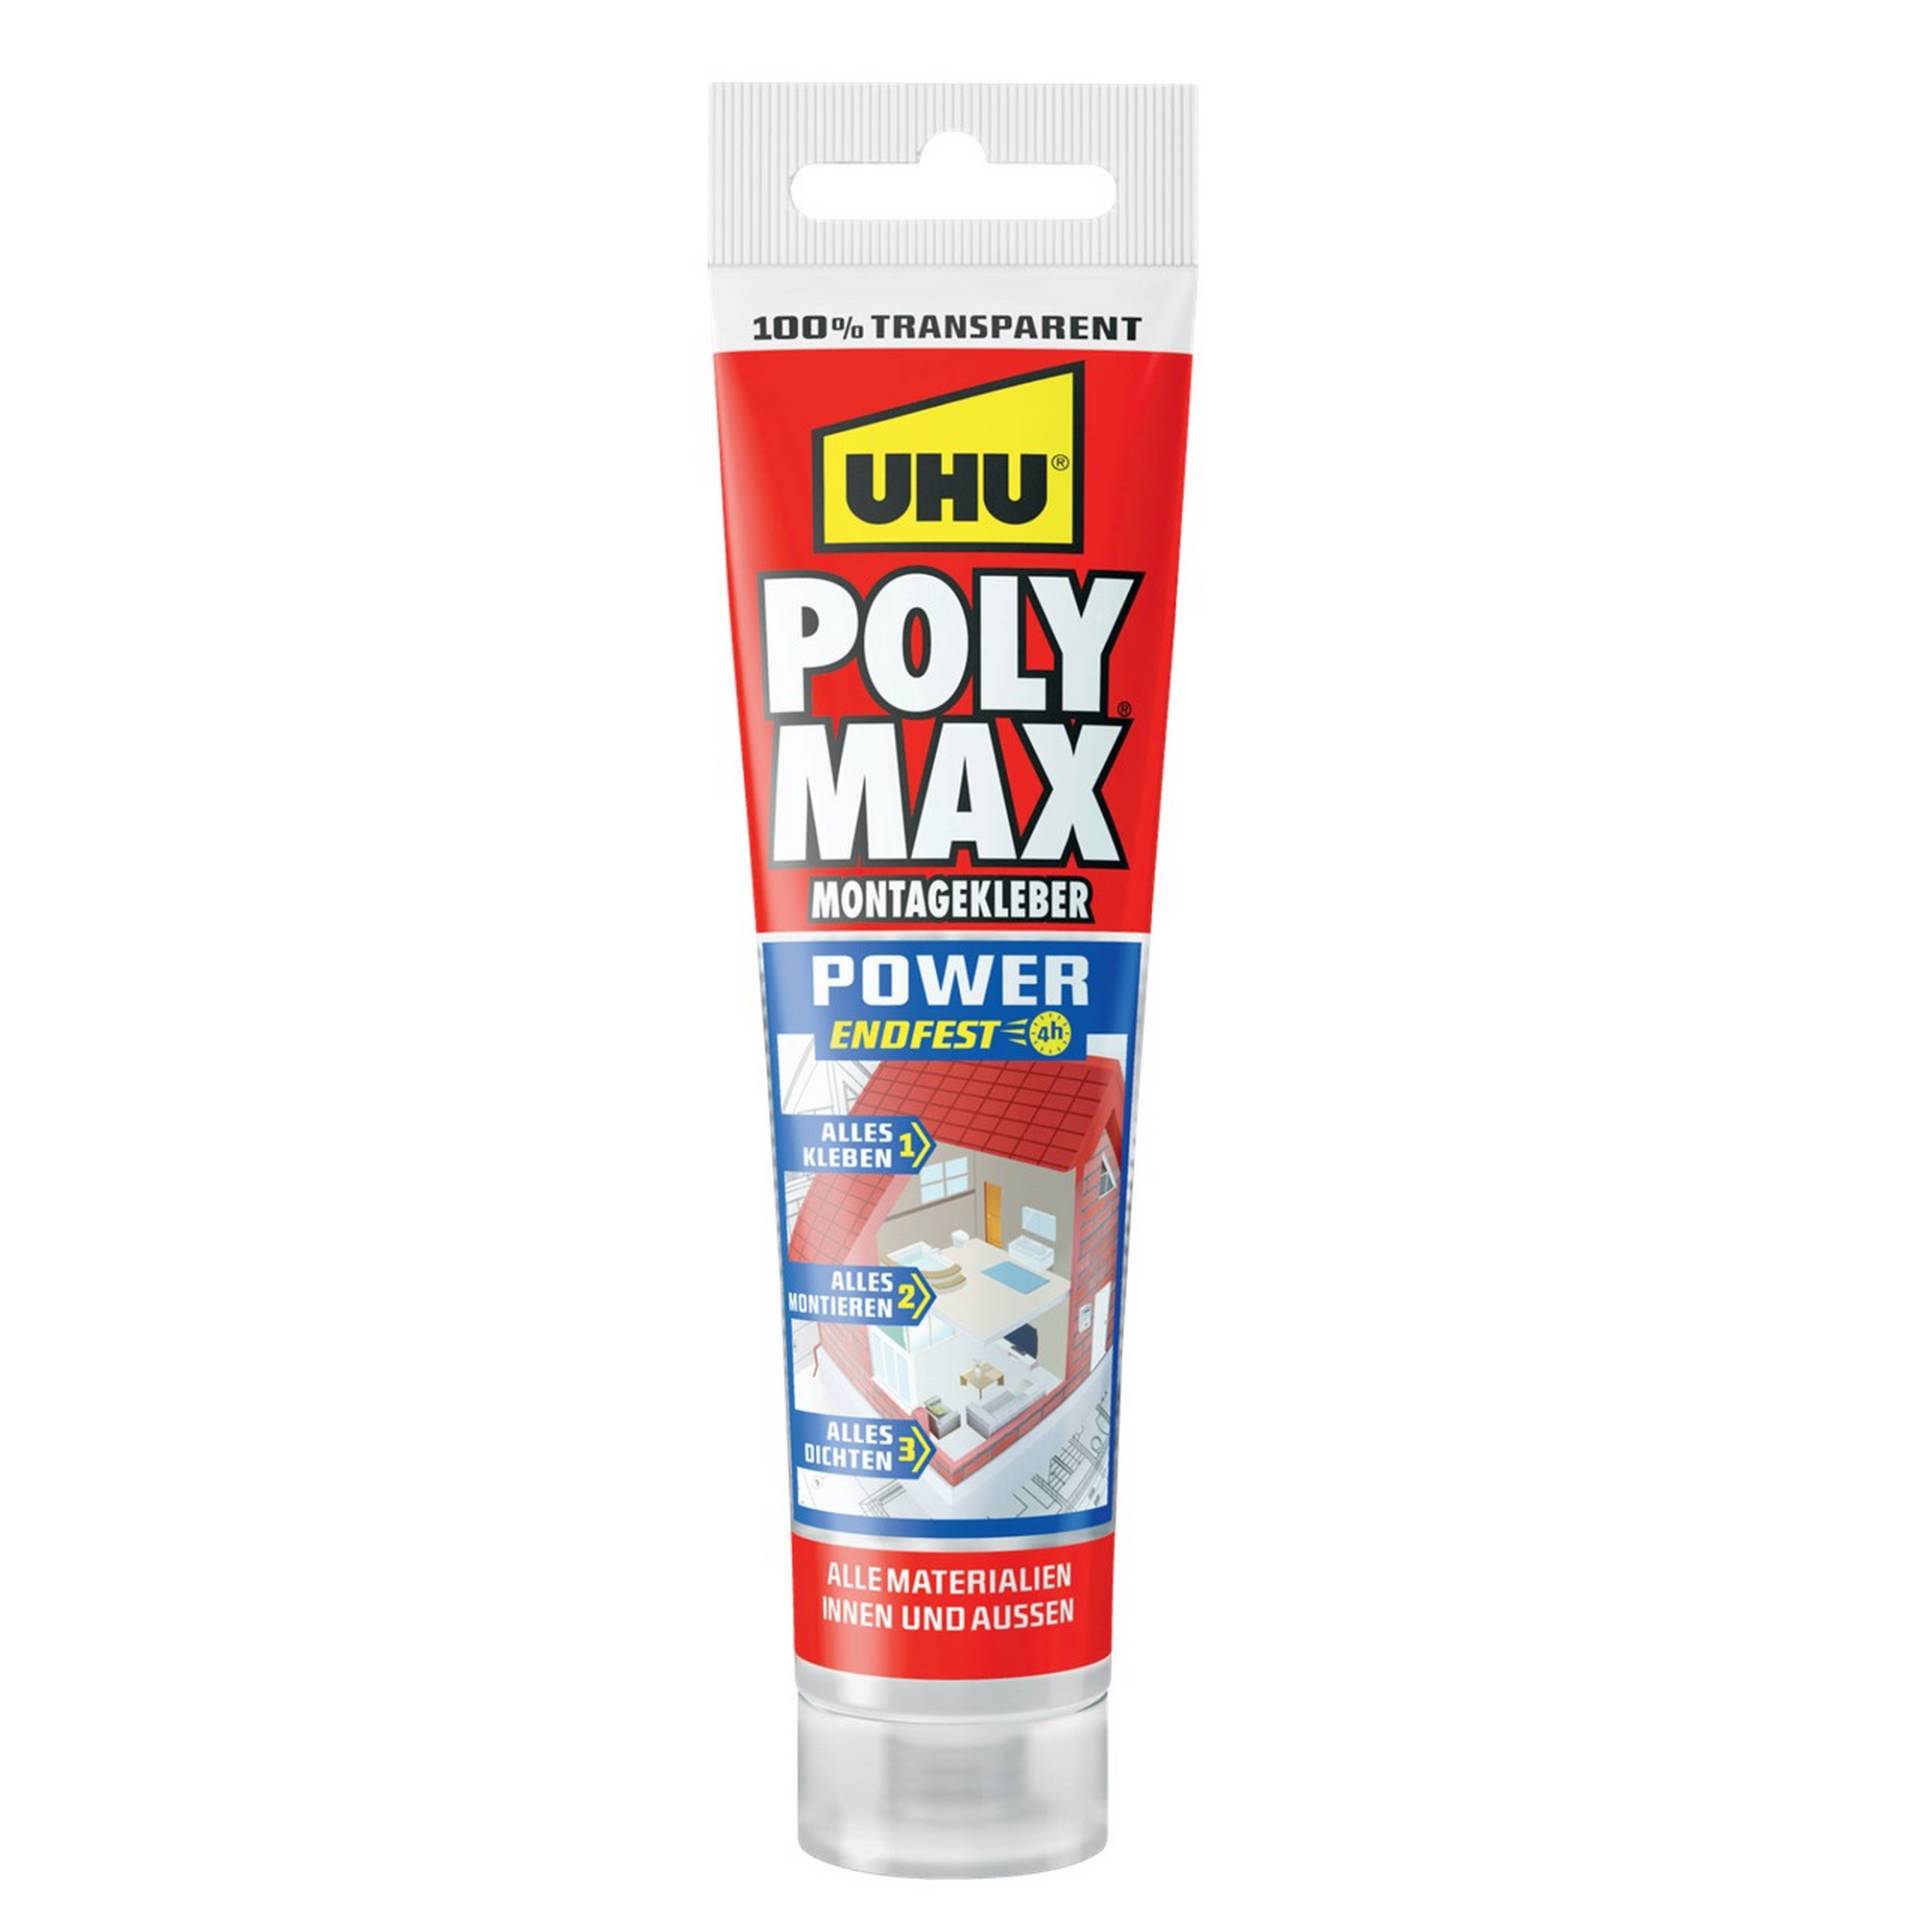 Uhu Montagekleber 'POLY MAX Power' transparent 115 g von UHU